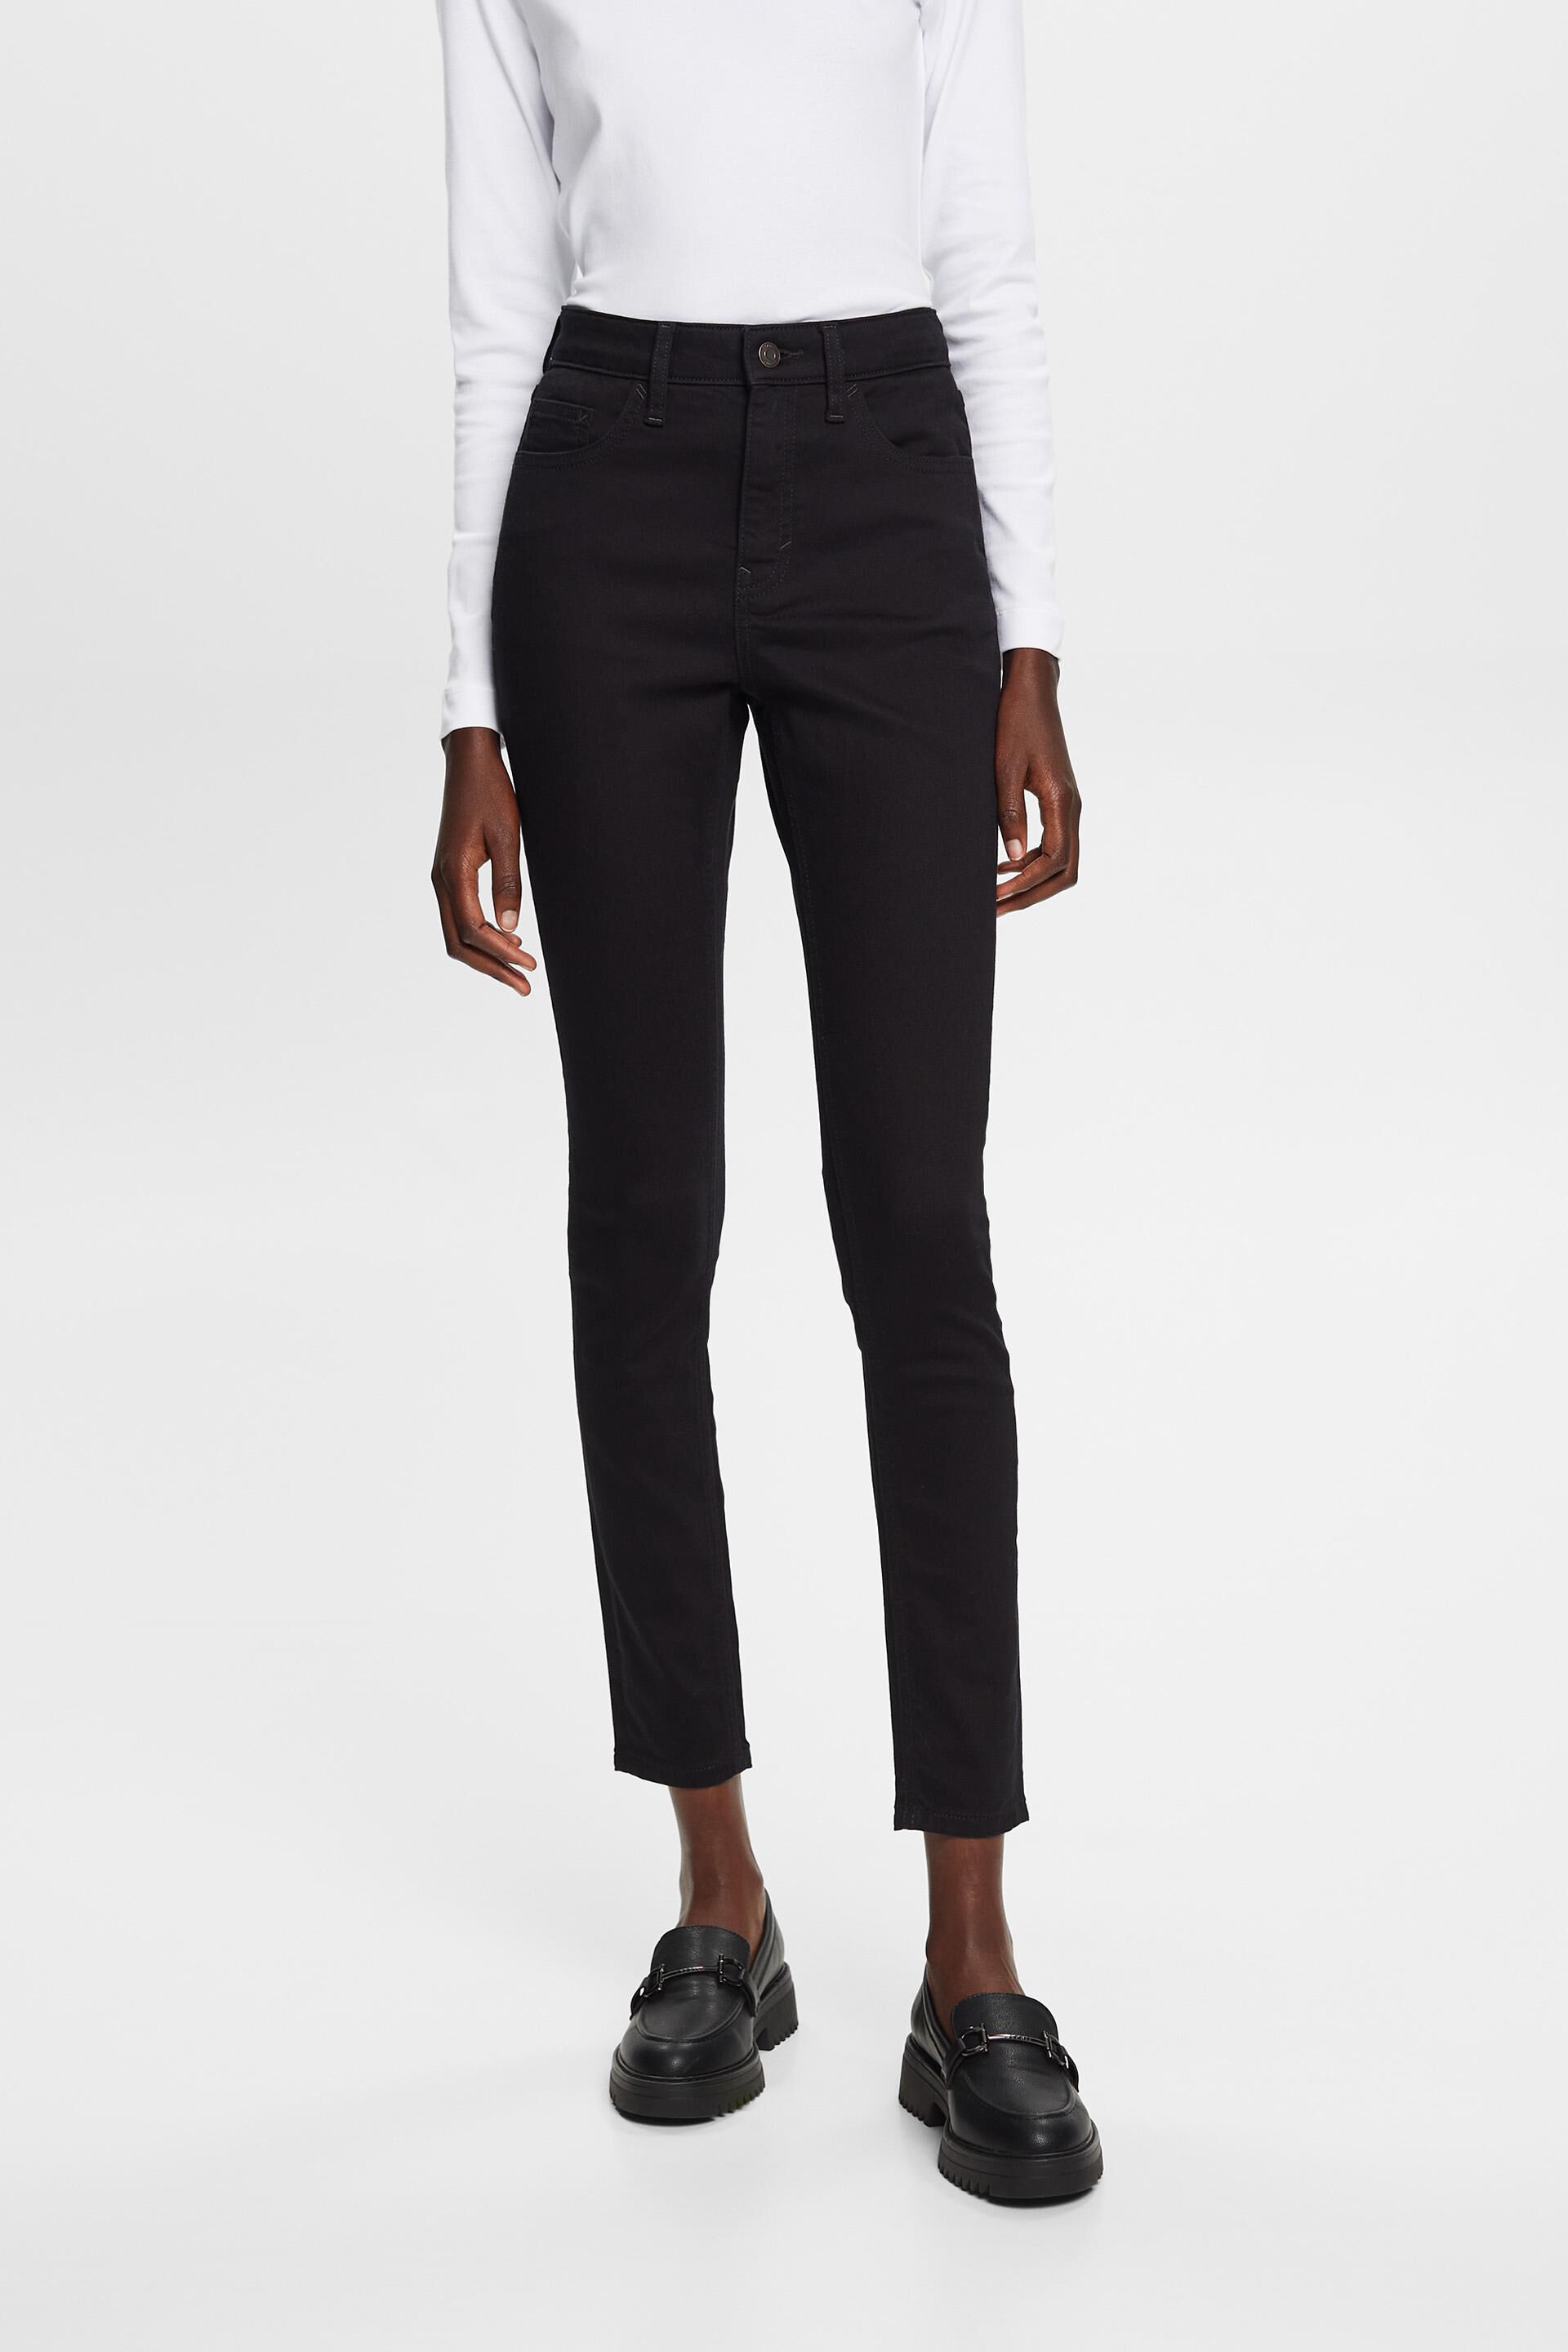 Esprit skinny Non-fade cotton jeans, stretch